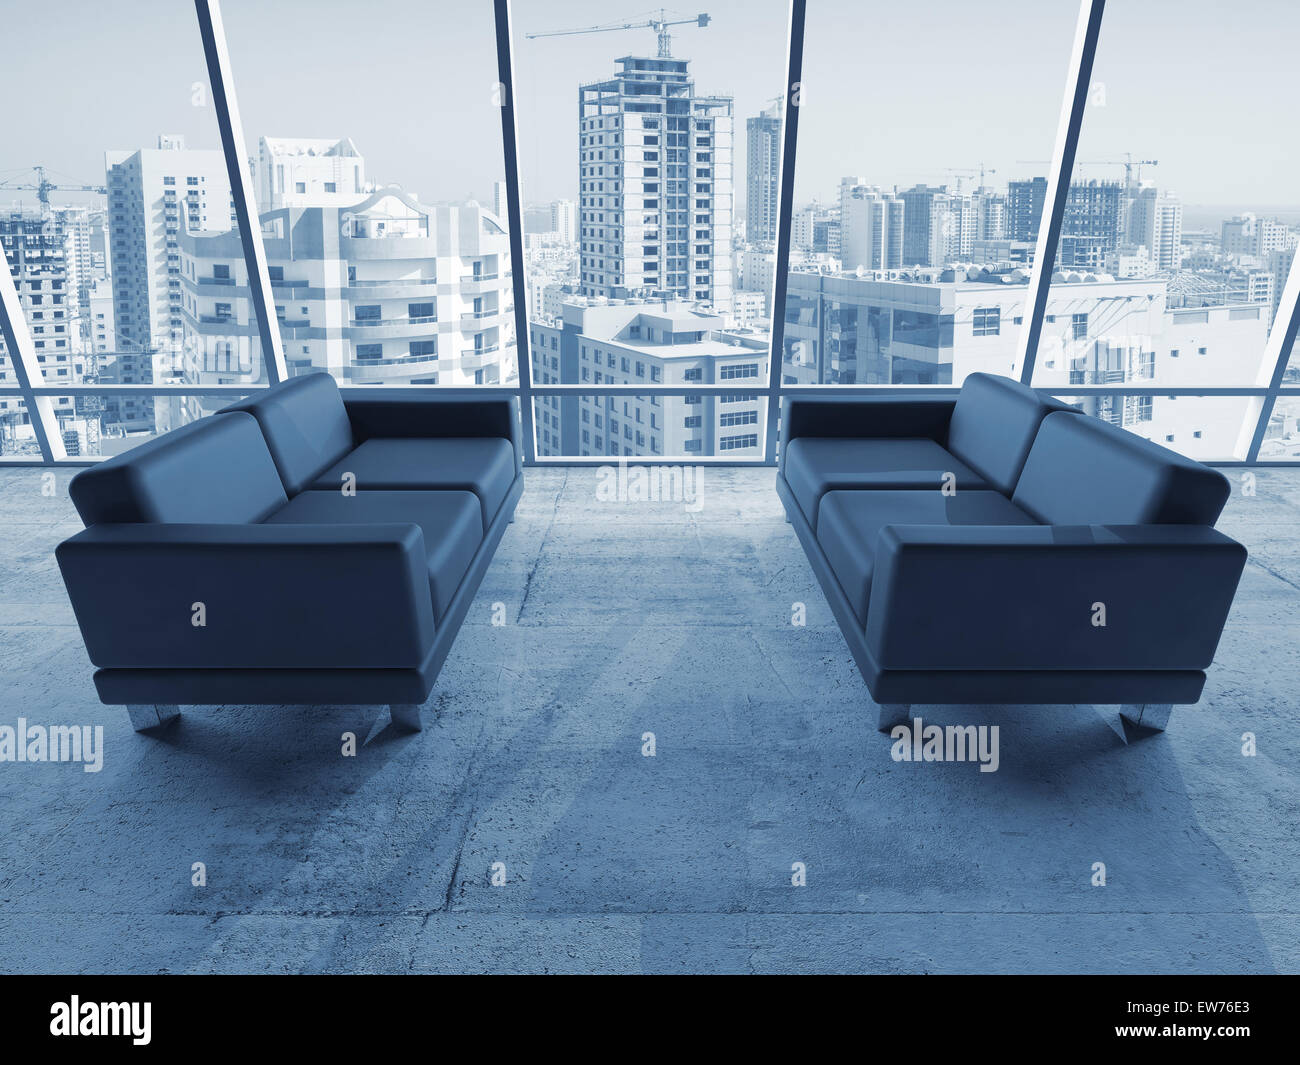 Abstrakte innere Büroraum mit Betonboden, Fenster und zwei schwarze Ledersofas, blau getönten 3D-Illustration mit cityscap Stockfoto